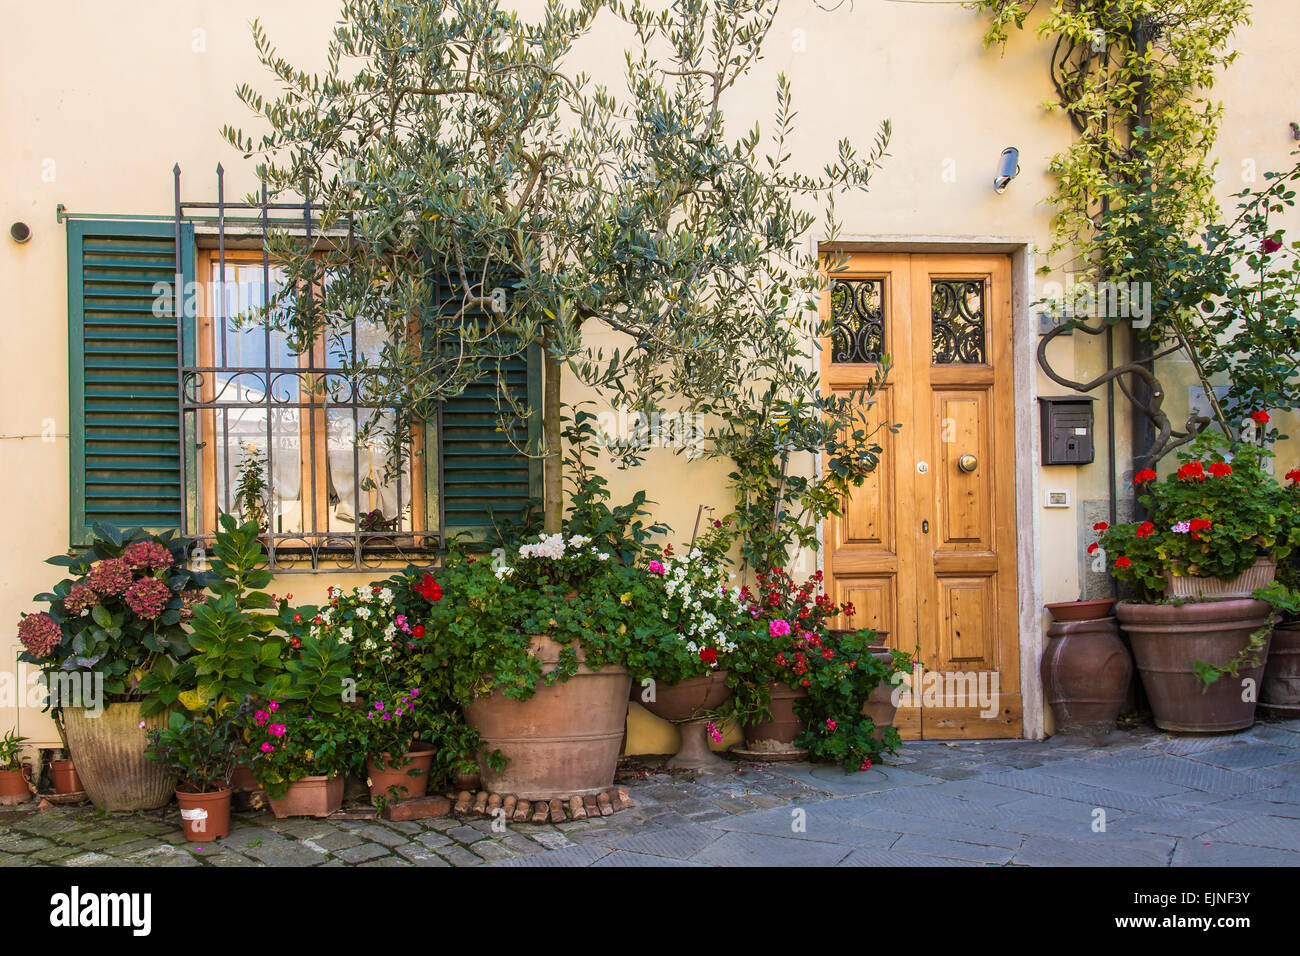 Pittoresco borgo casa in Castellina in chianti, Toscana con colorati vasi di fiori, piante rampicanti e una bella porta di legno Foto Stock